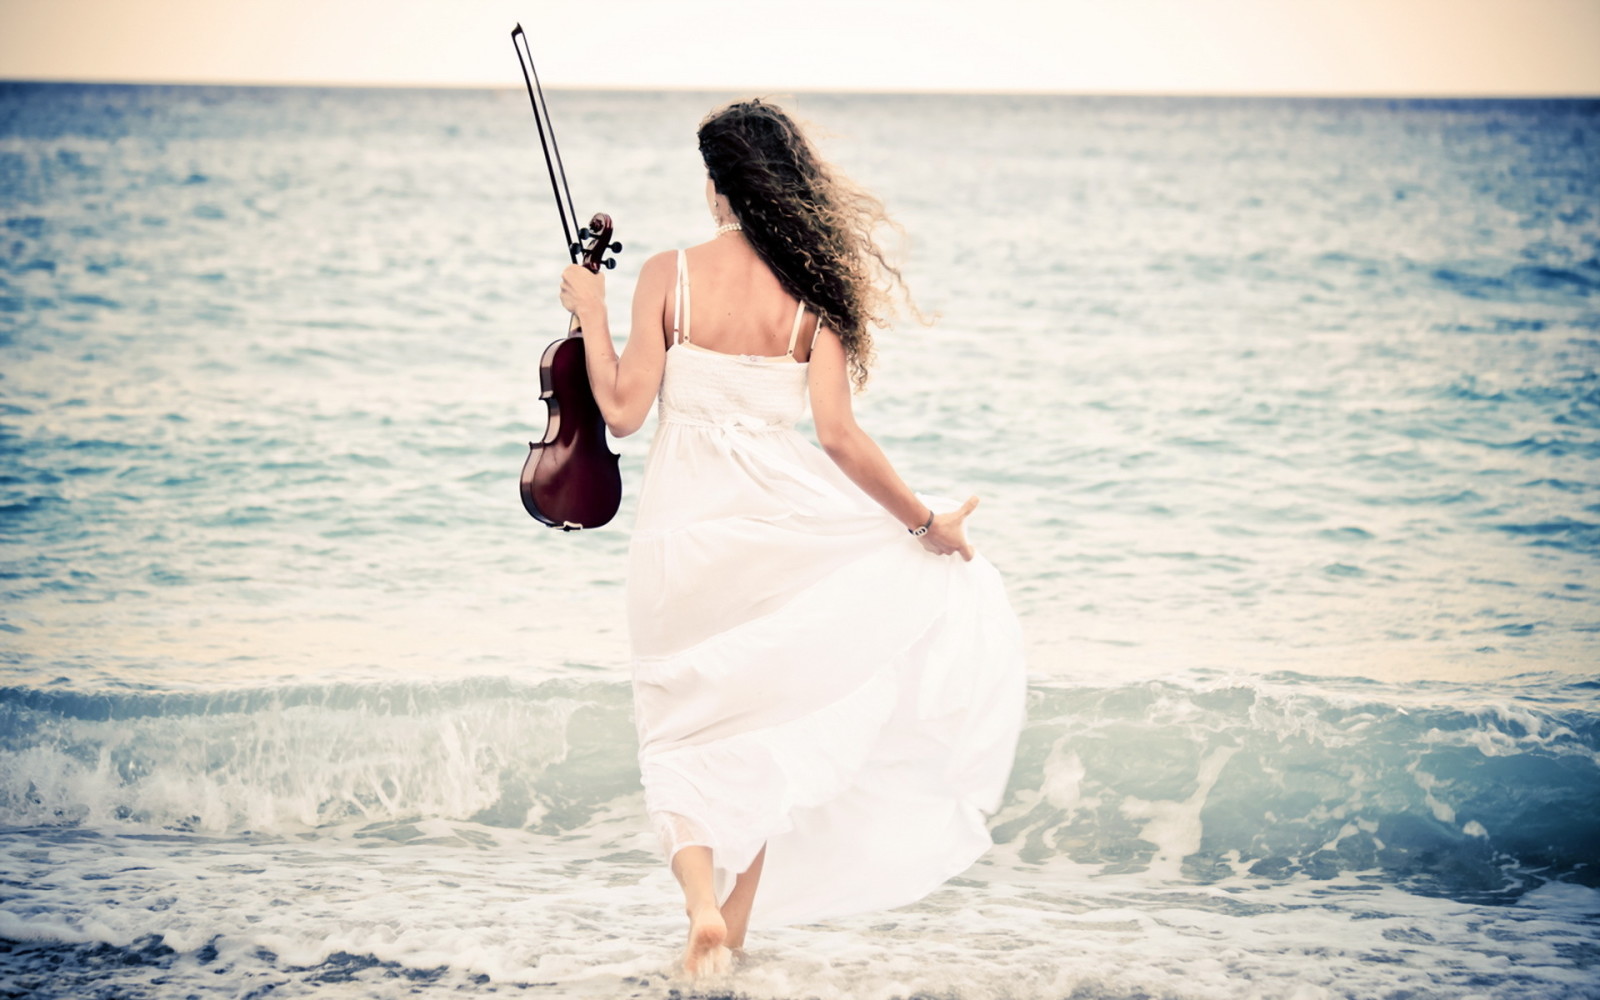 女の子, 海, バイオリン